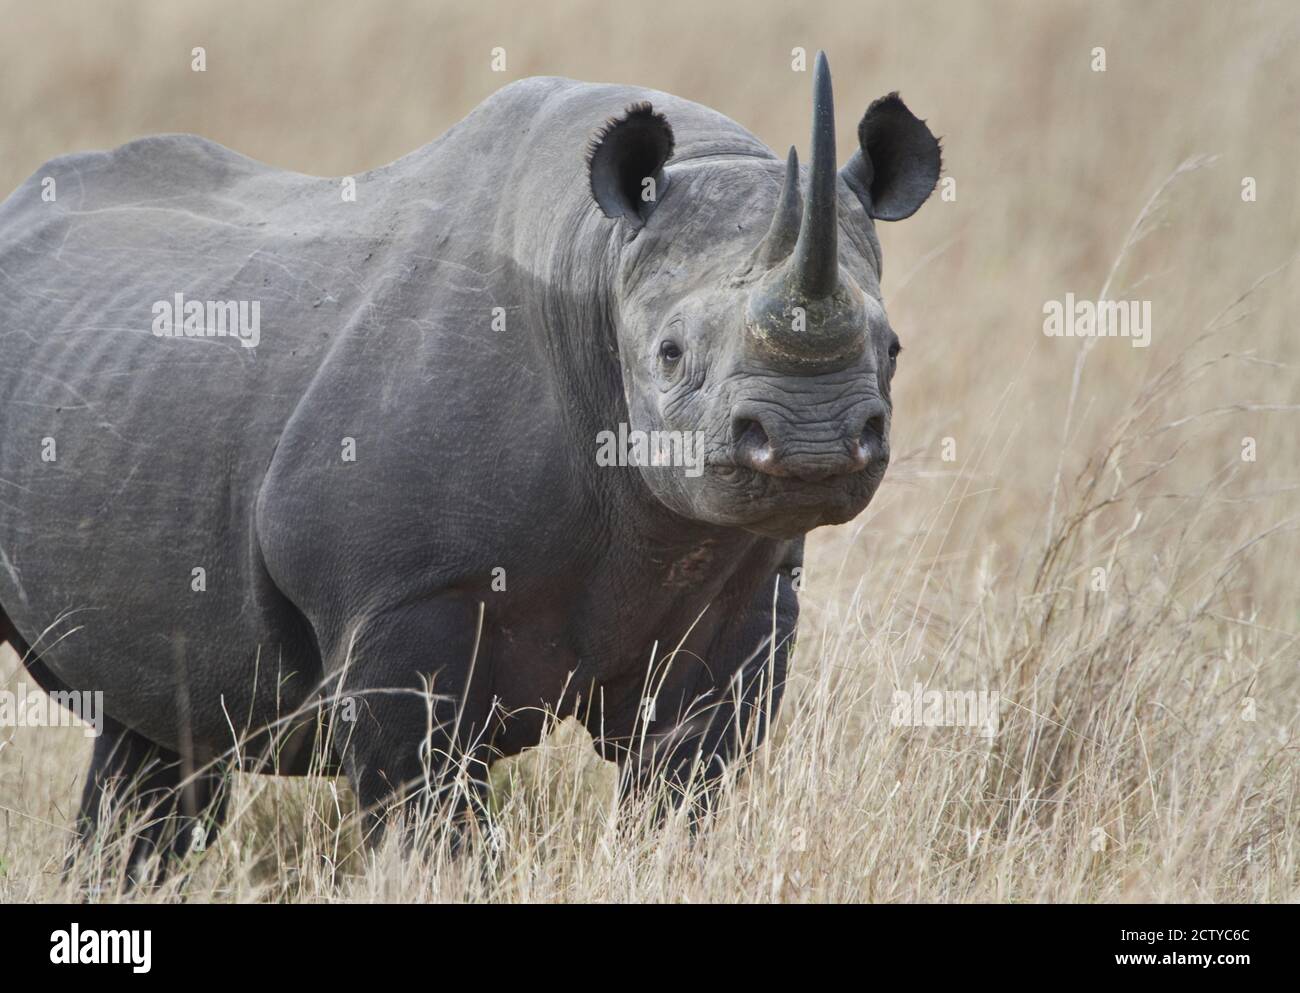 Rhinocéros noirs (Diceros bicornis) dans un champ, Kenya Banque D'Images